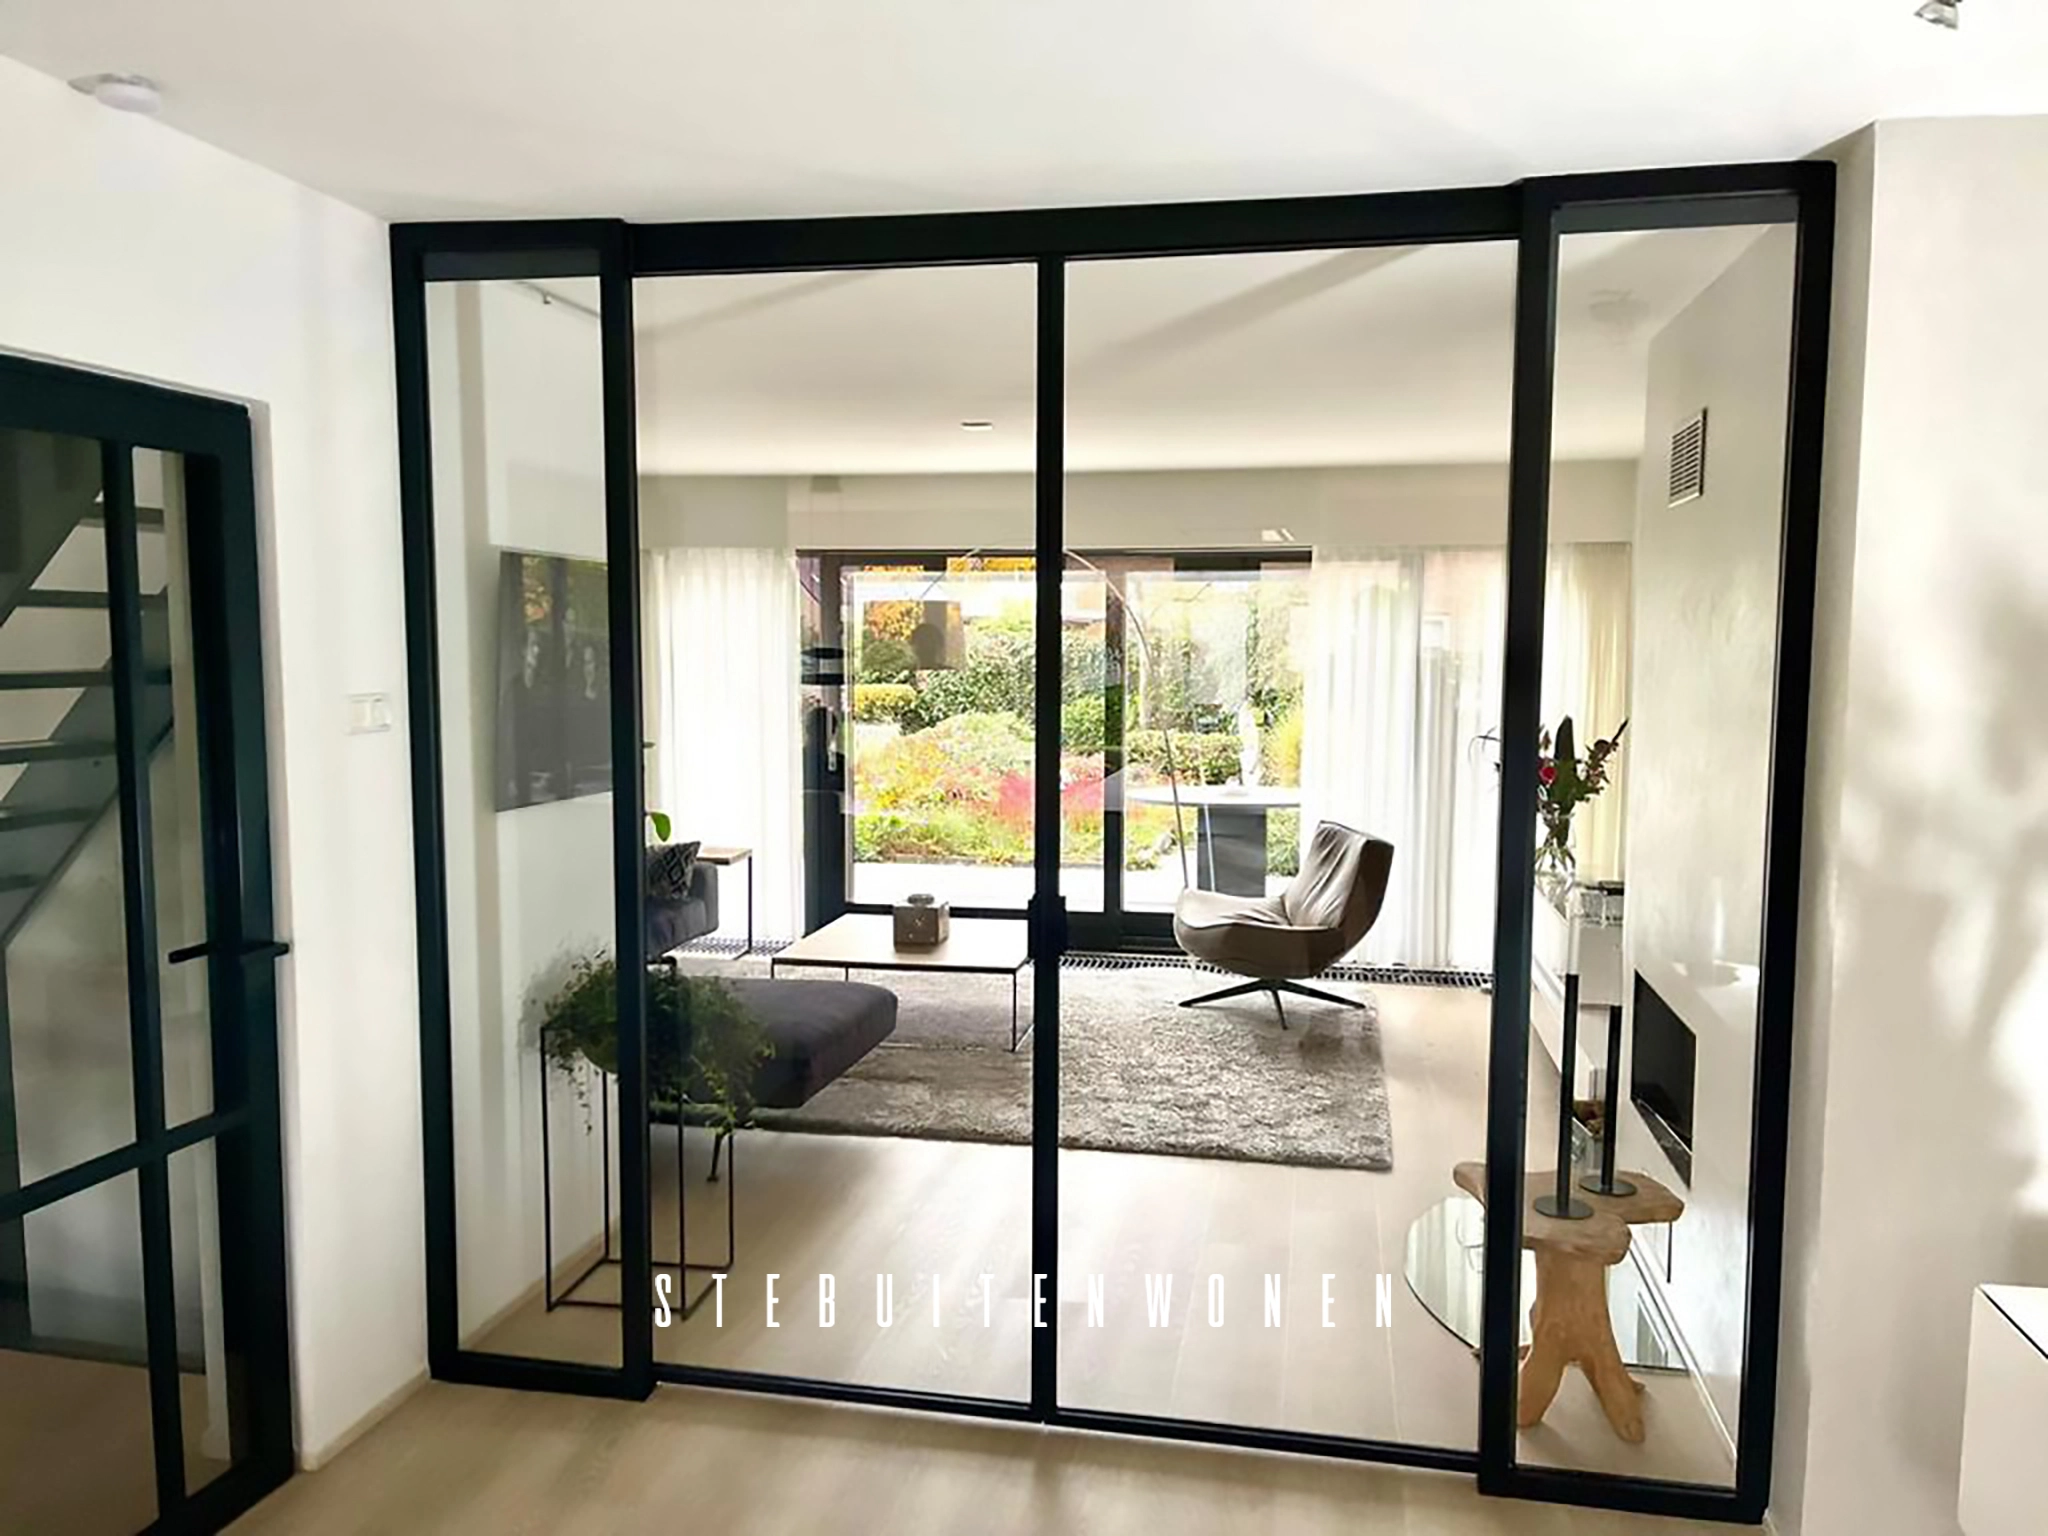 Moderne interieur met een stijlvolle glazen deur voorzien van softclose systeem, geflankeerd door twee vaste ramen, geïnstalleerd in een helder en minimalistisch ontwerp